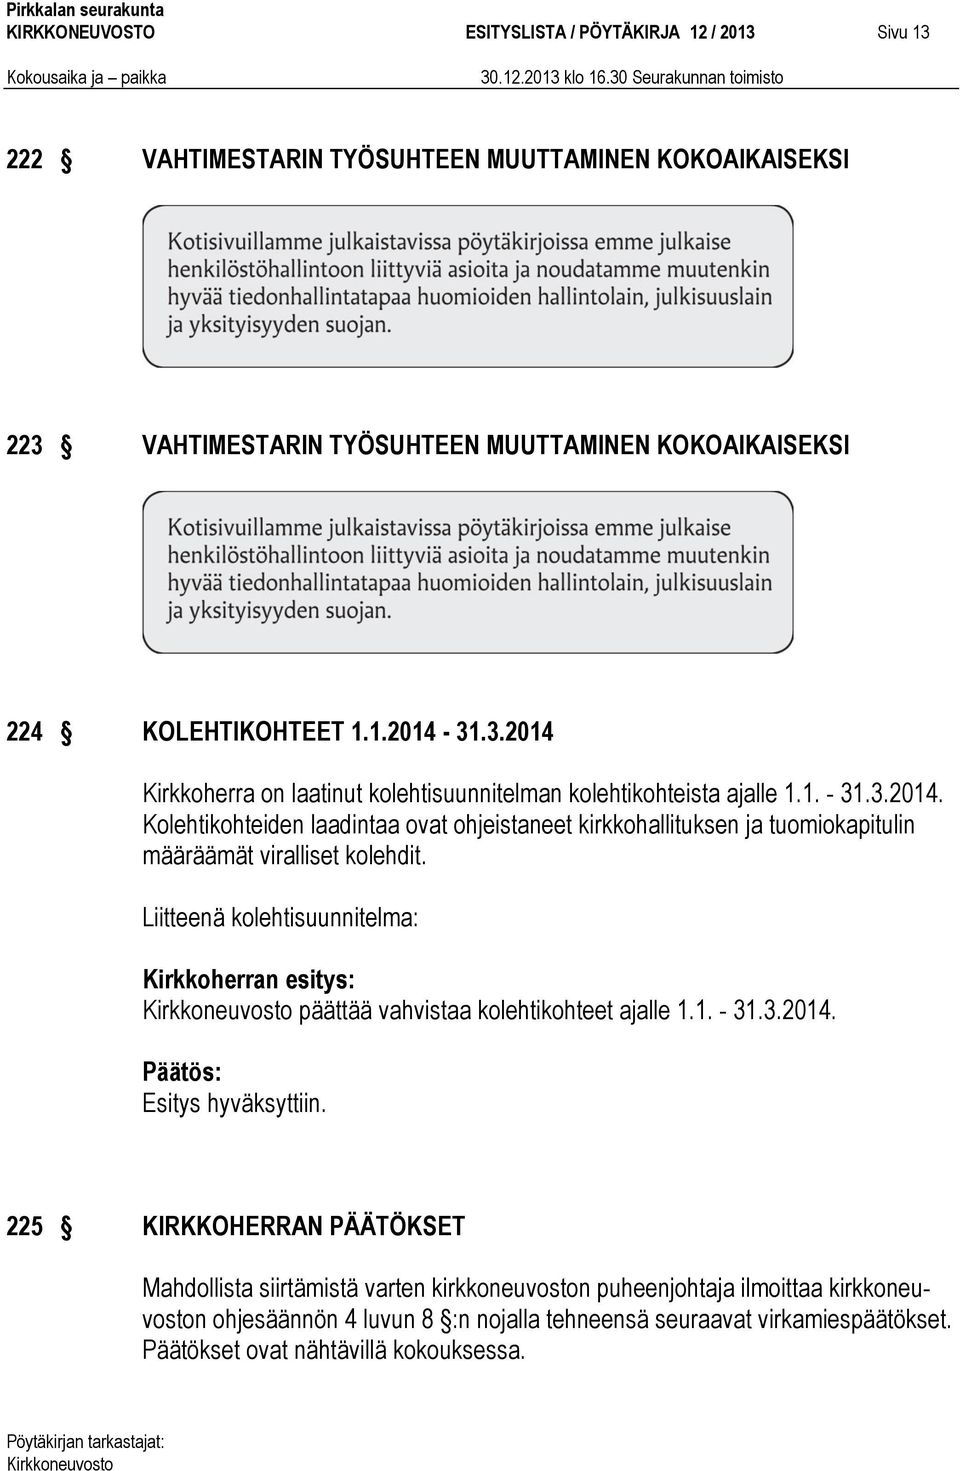 Liitteenä kolehtisuunnitelma: Kirkkoherran esitys: päättää vahvistaa kolehtikohteet ajalle 1.1. - 31.3.2014.